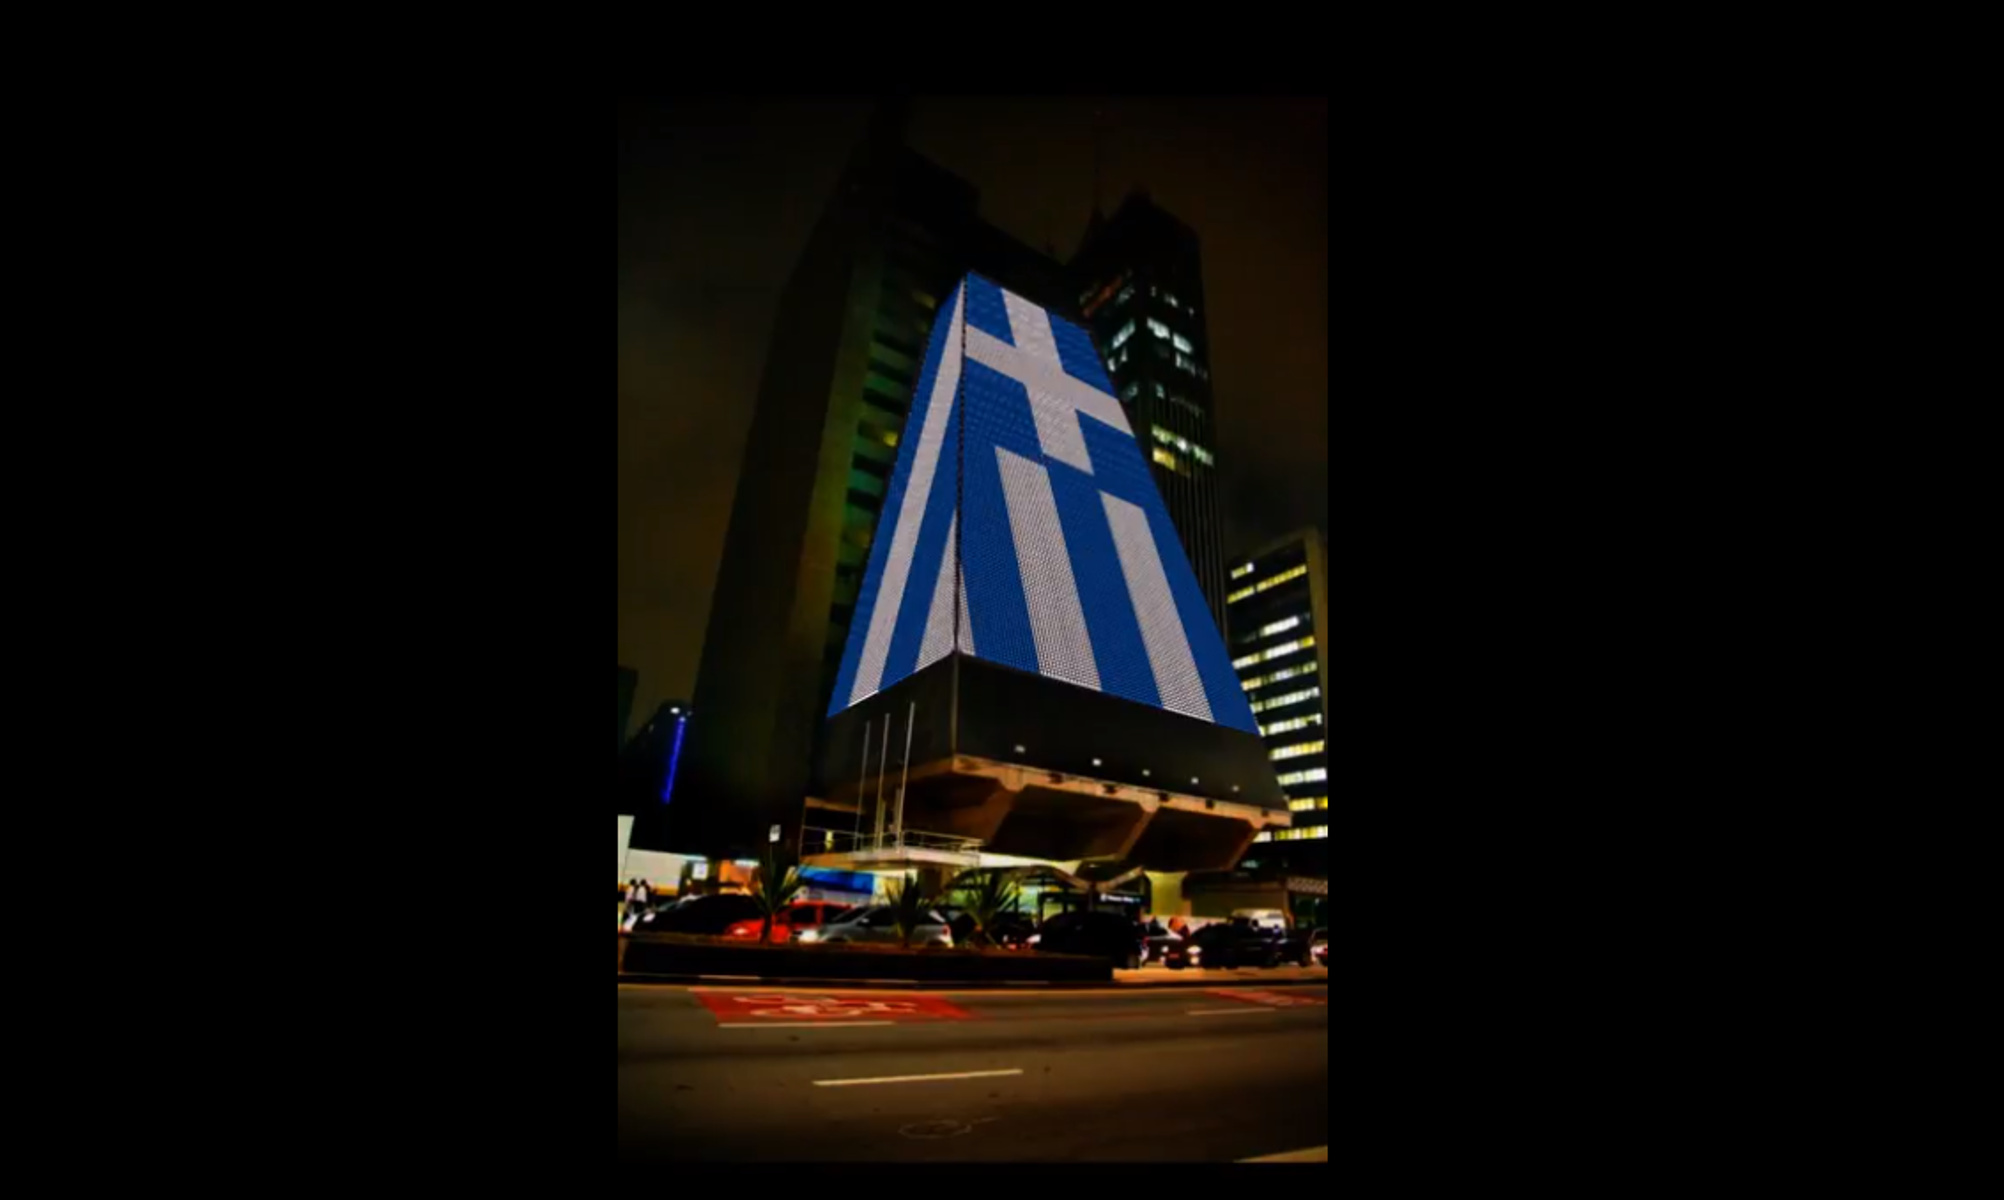 25η Μαρτίου: Φωταγωγούνται στα ελληνικά χρώματα δύο περίοπτα κτίρια στη Βραζιλία